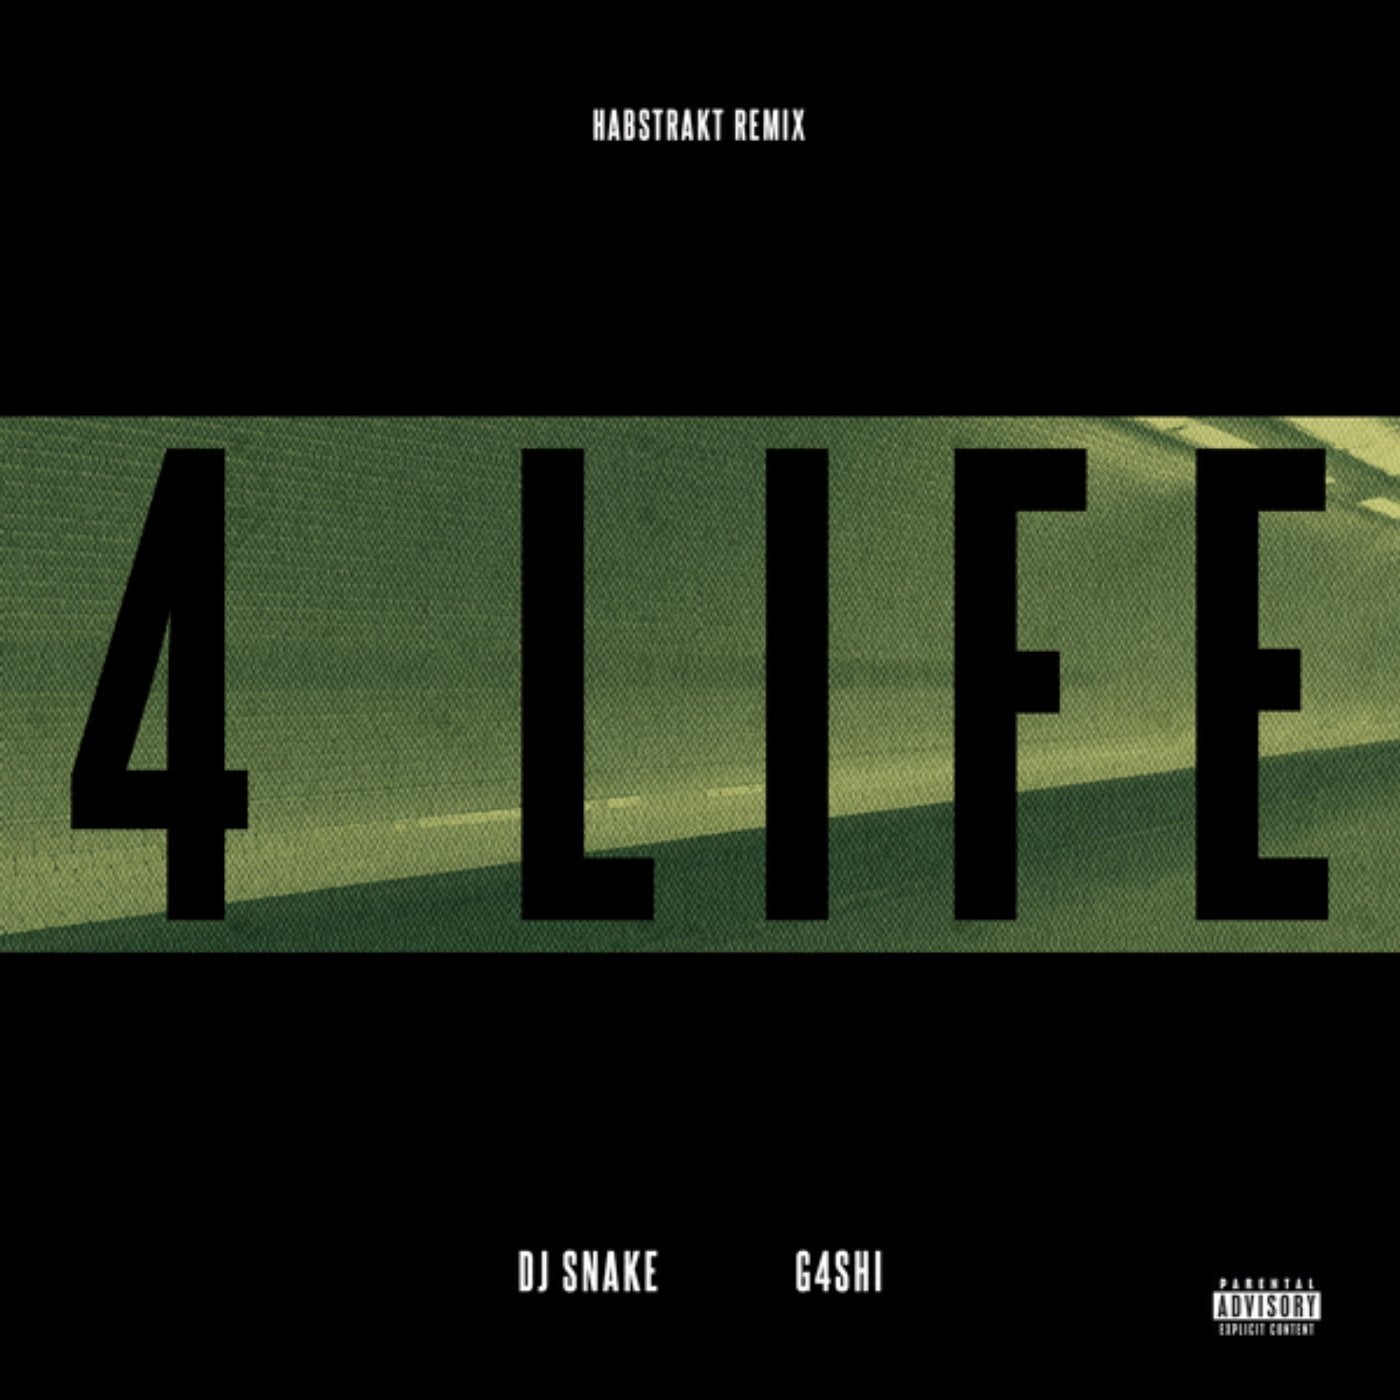 Life 4 music. DJ Snake альбомы. DJ Snake turn down for what. DJ'S Life. Habstrakt студия.